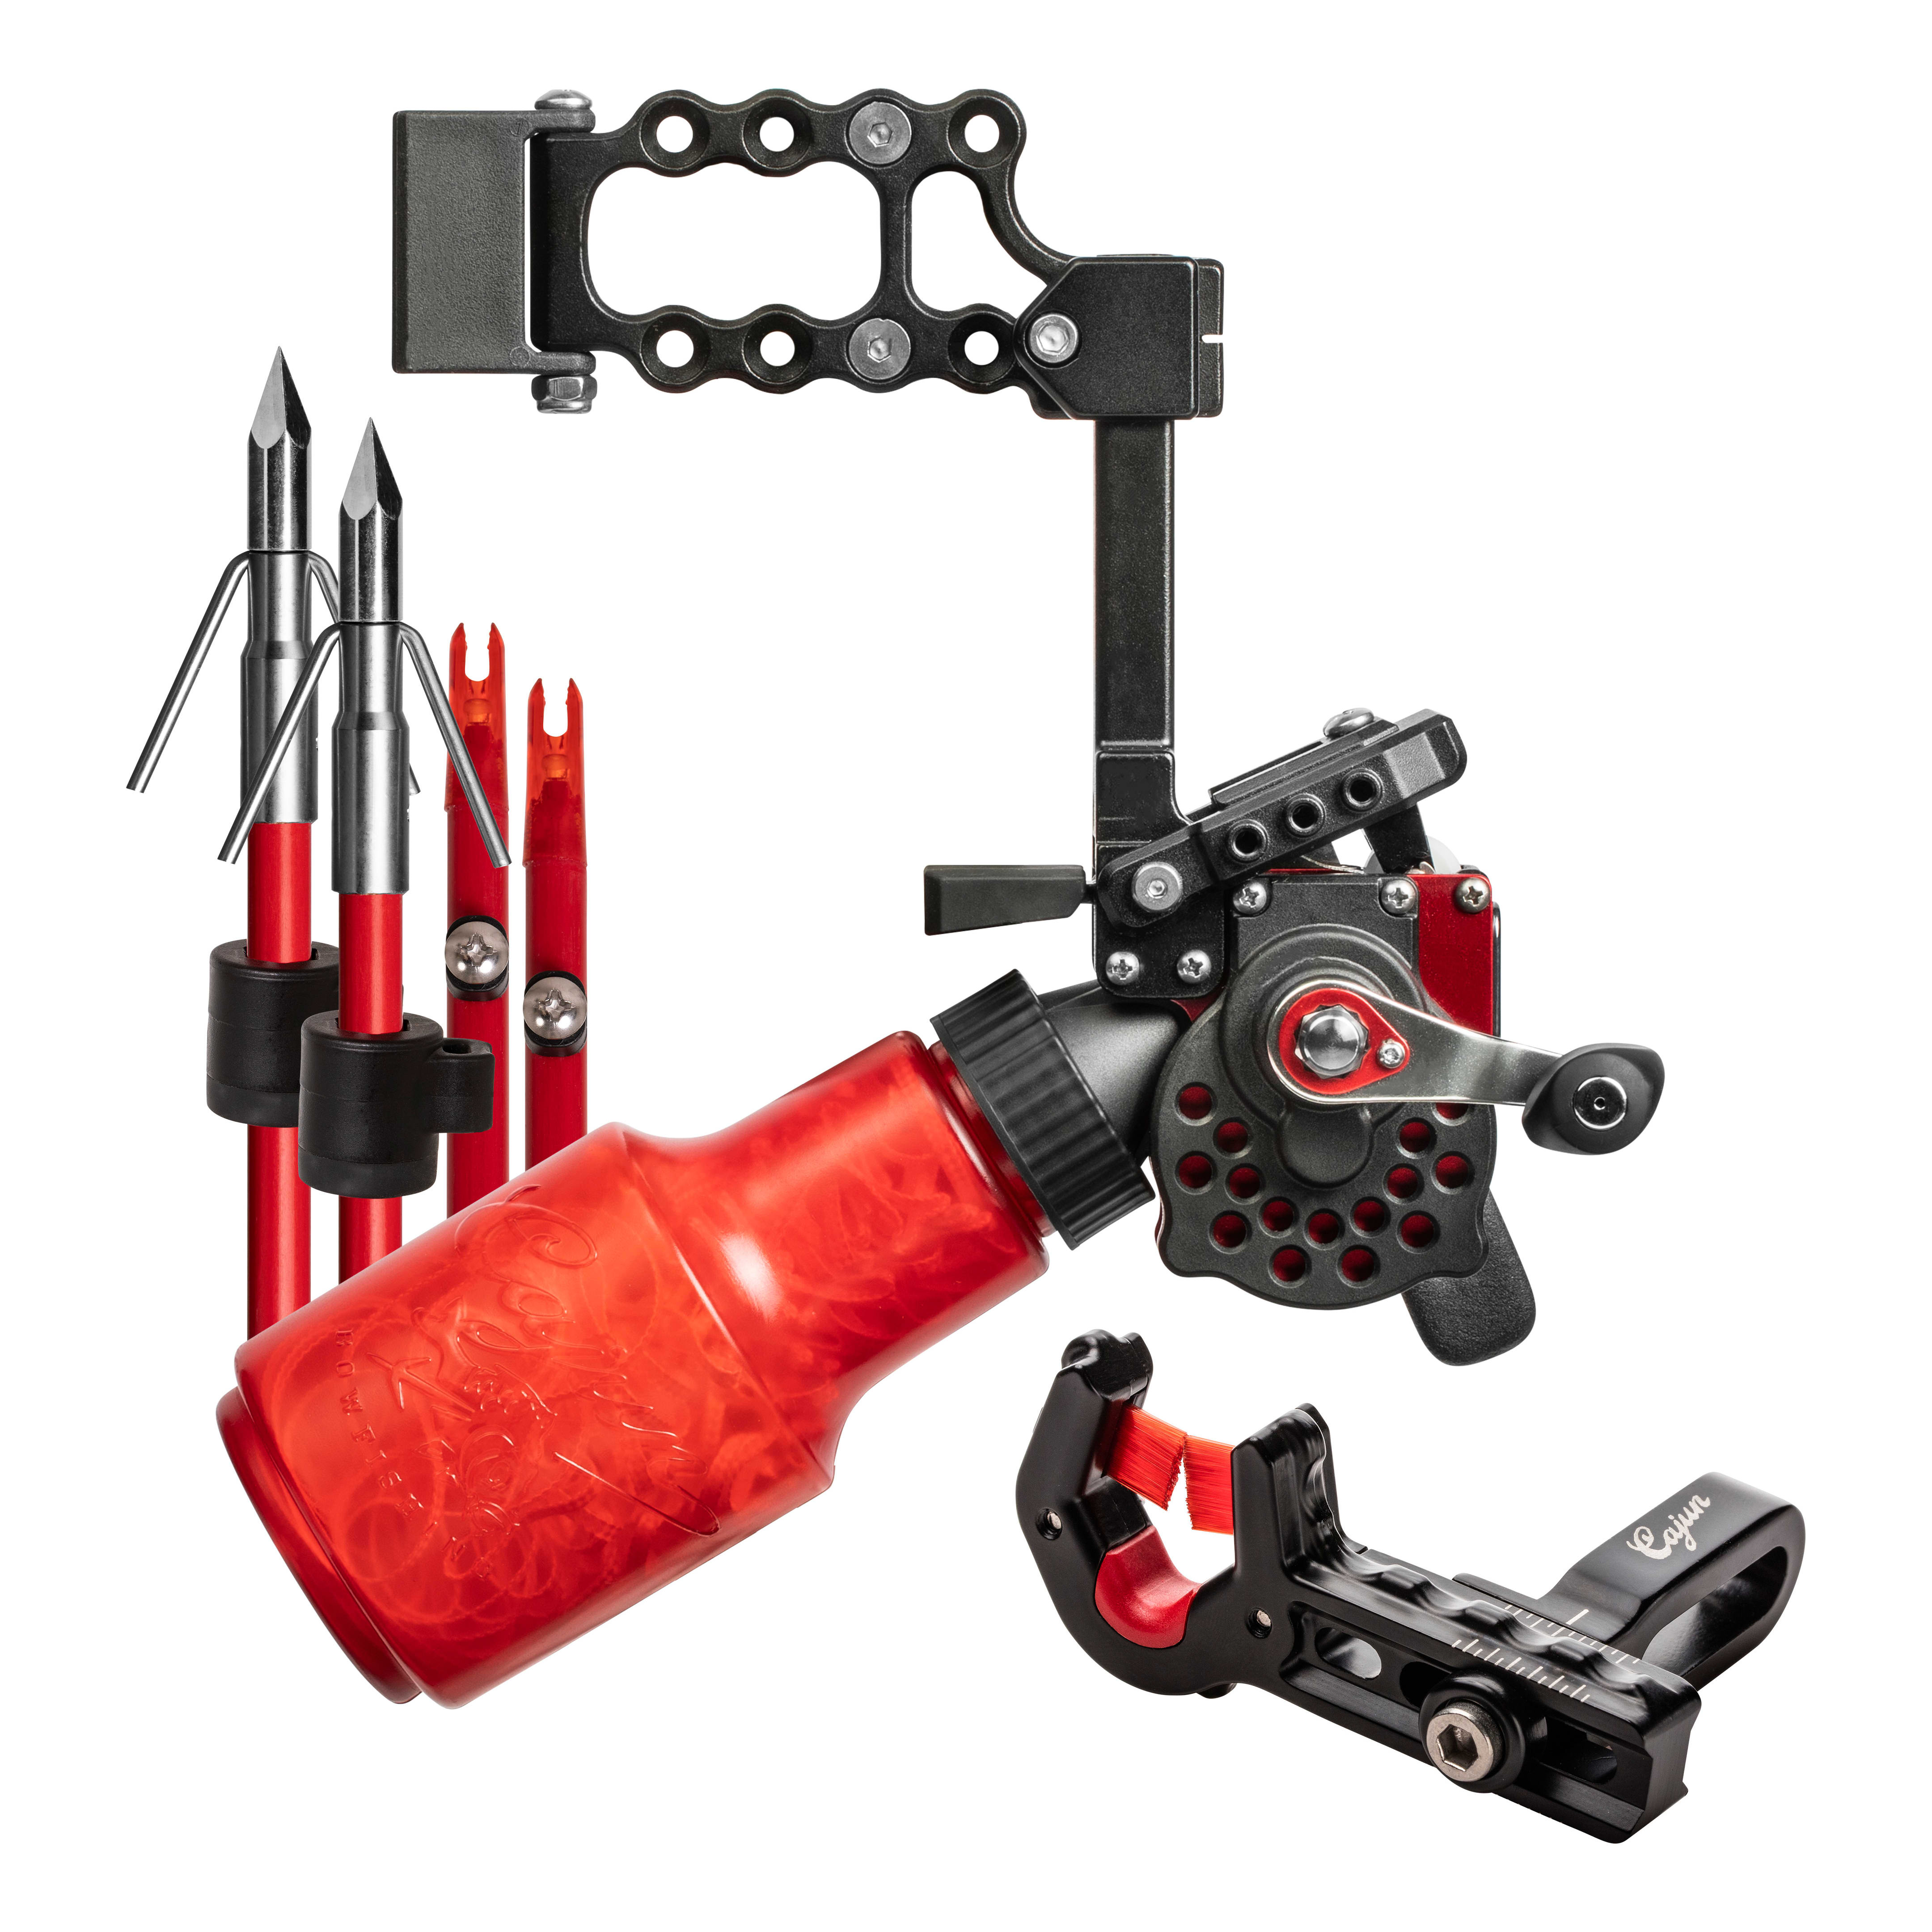 Bowfishing Supplies & Accessories: Bow Fishing Kits, Reels